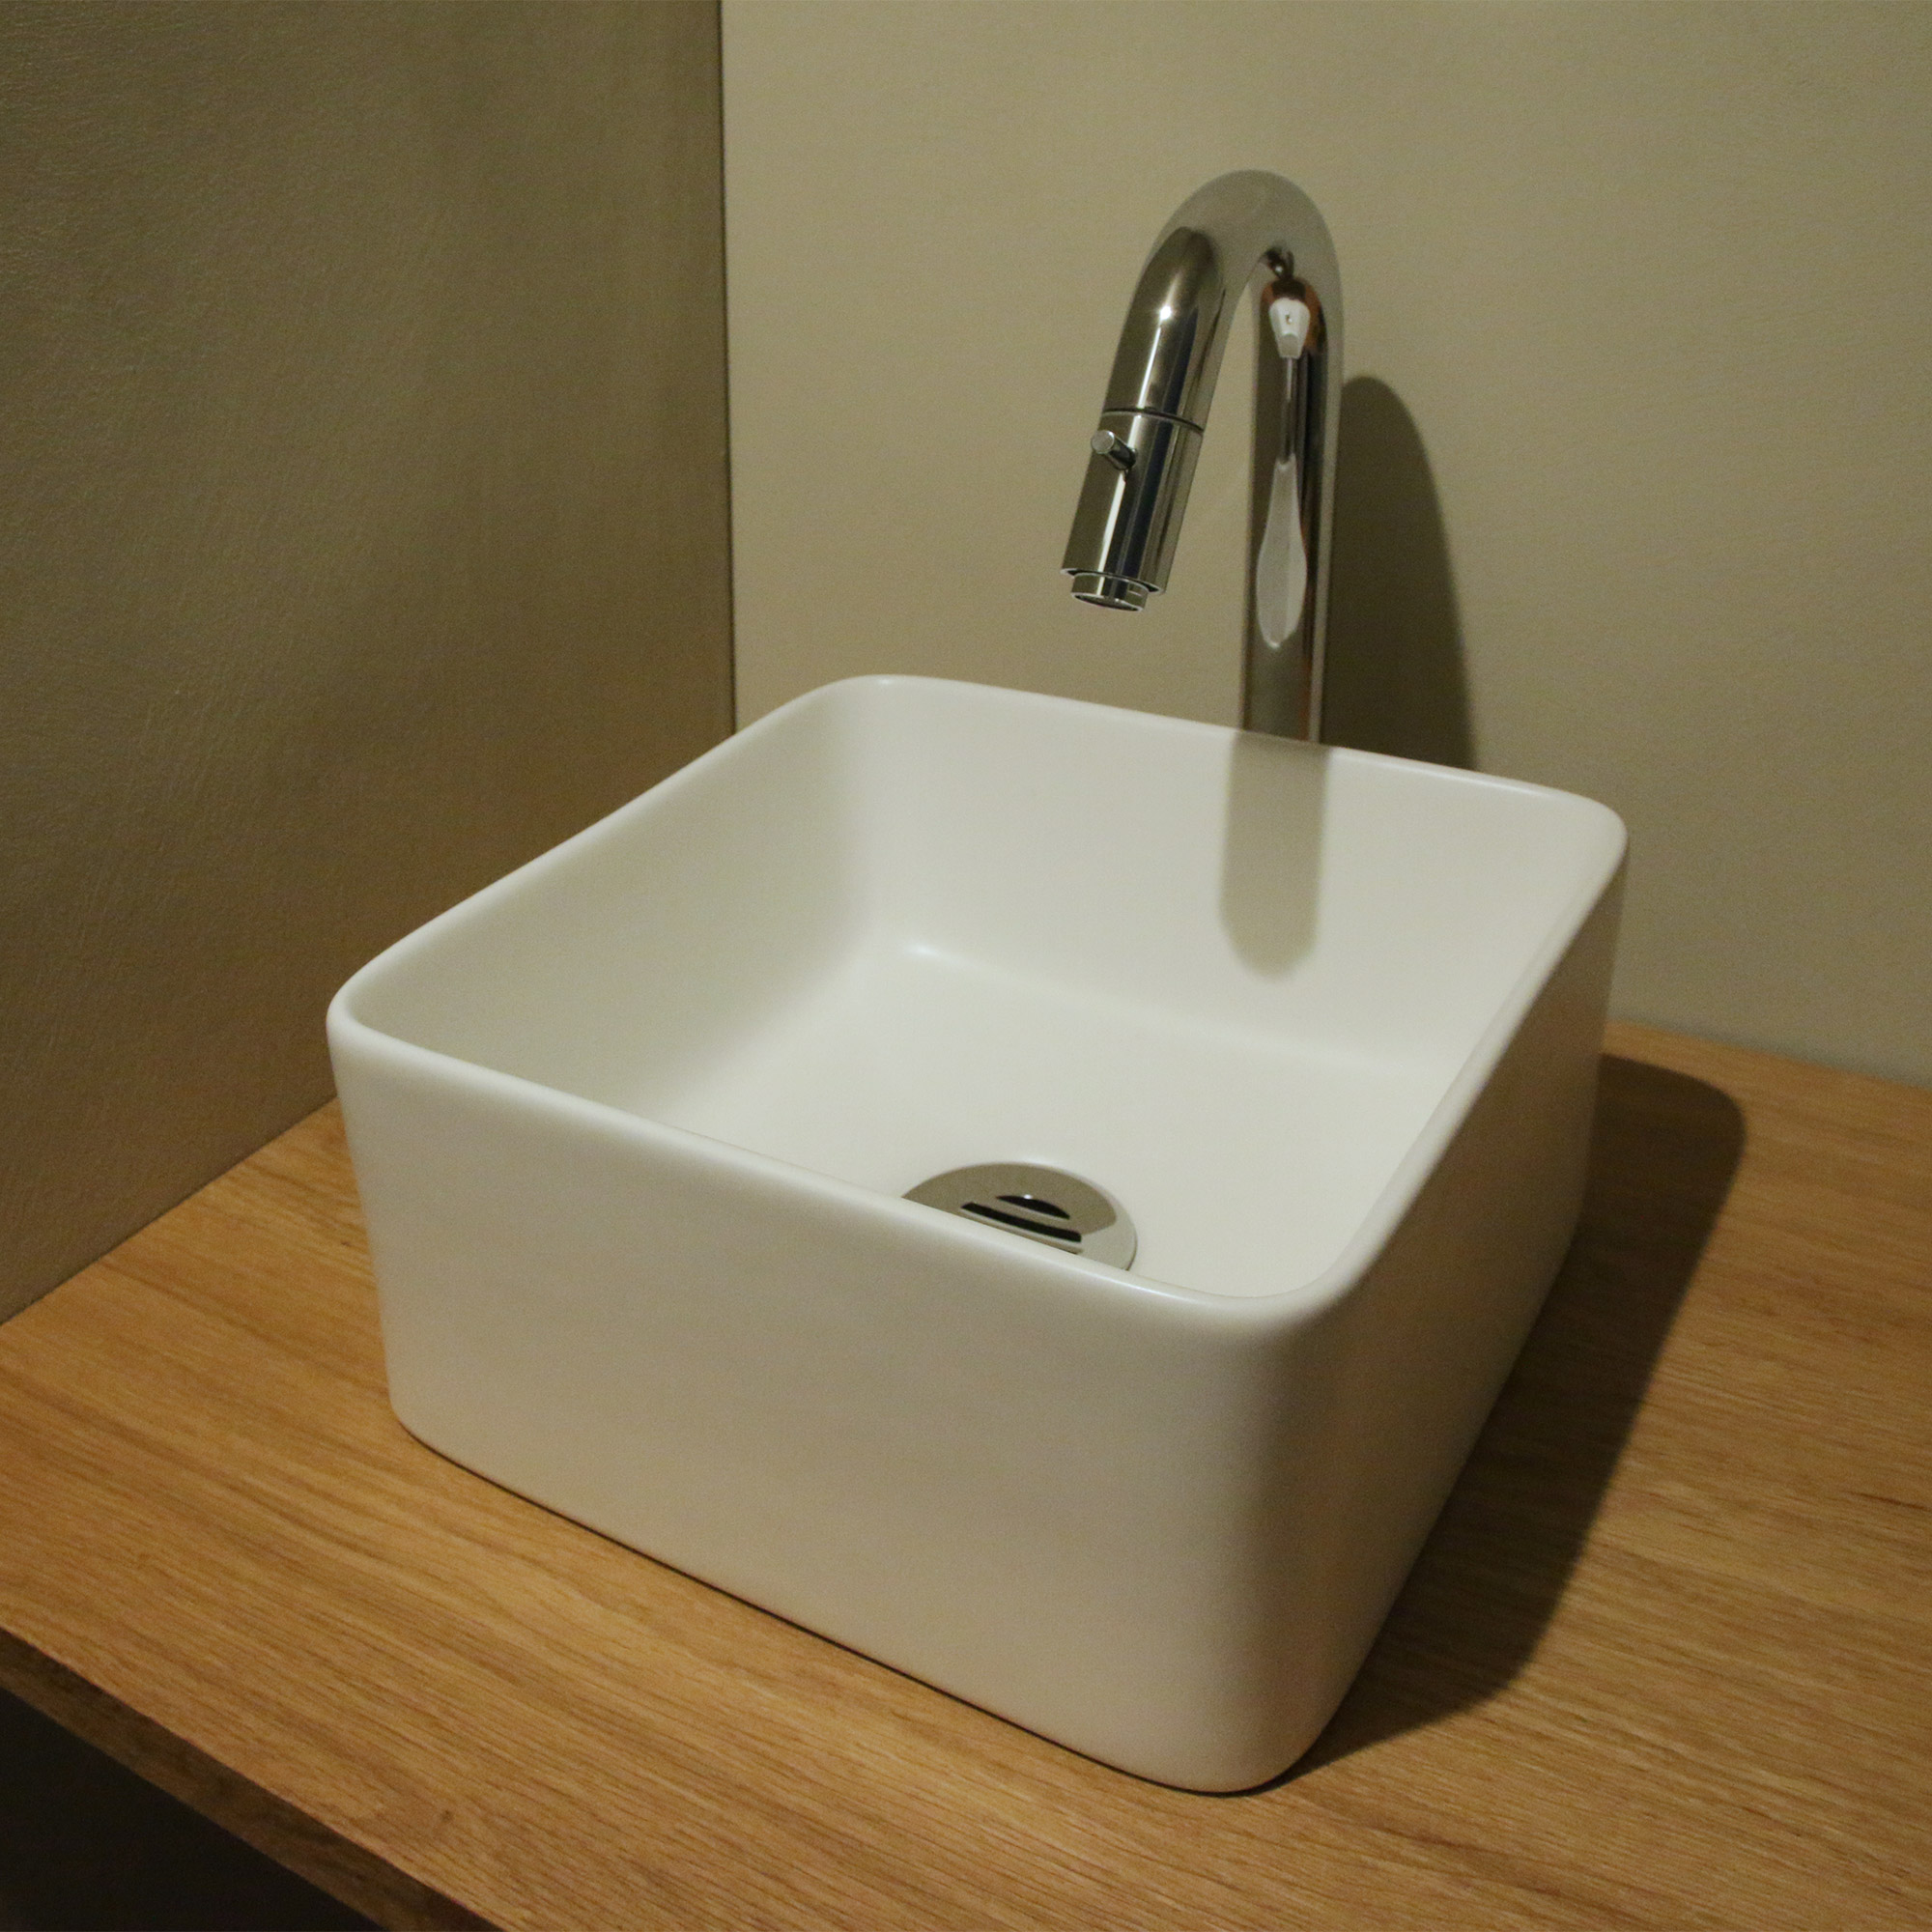 陶器の手洗い器 角240 ホワイト KB-PR012-01-G141 「台付けスパウトレバー単水栓 グースネック」と「目皿カバー」の組み合わせ